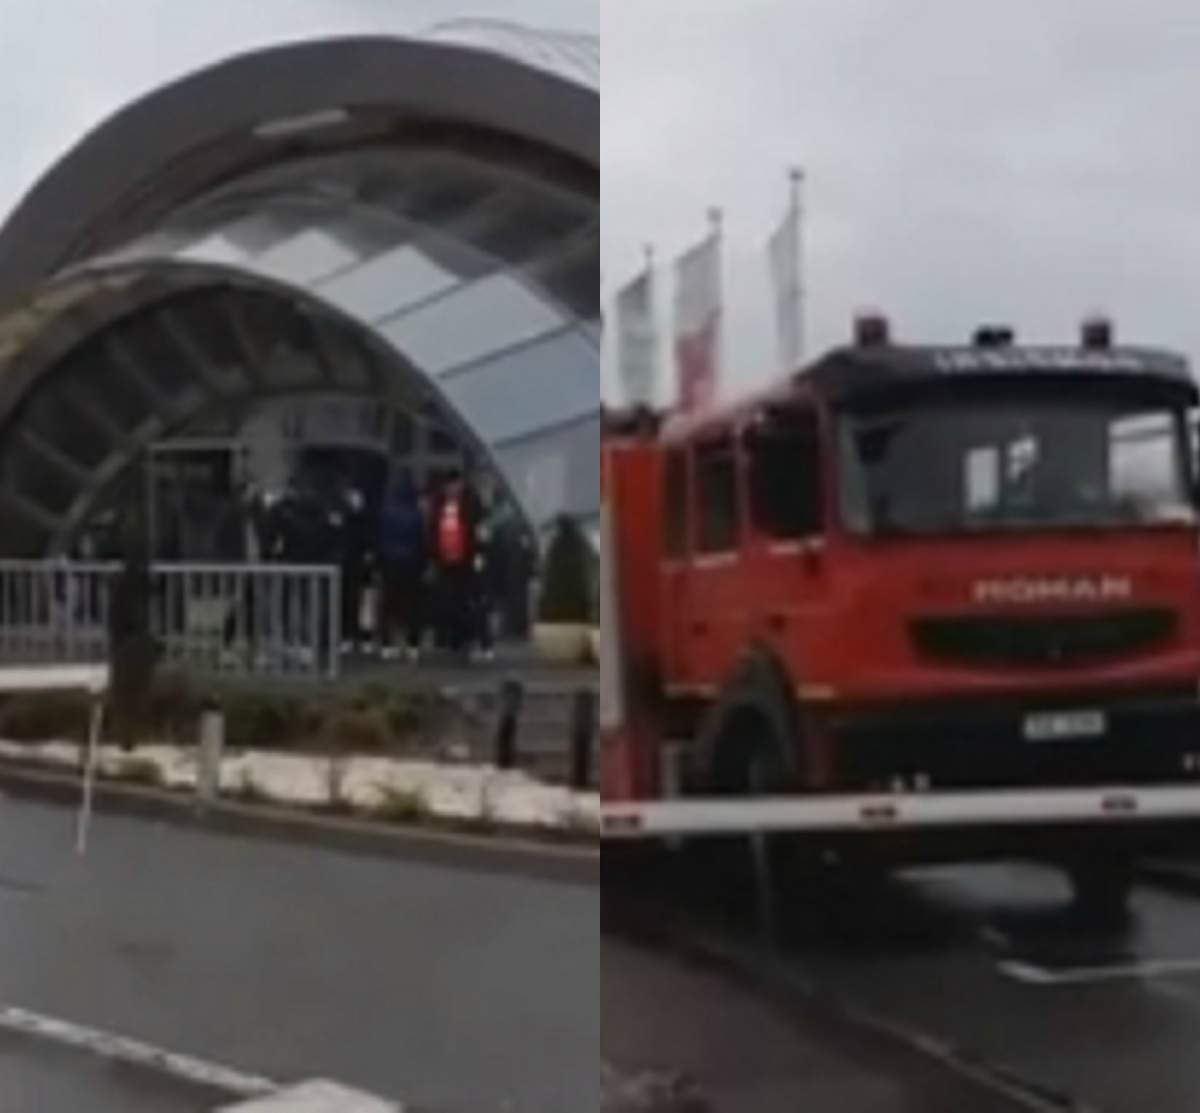 VIDEO / Alertă la Salina Turda! Un grup de turiști este blocat în roata mare. Pompierii acționează de urgență